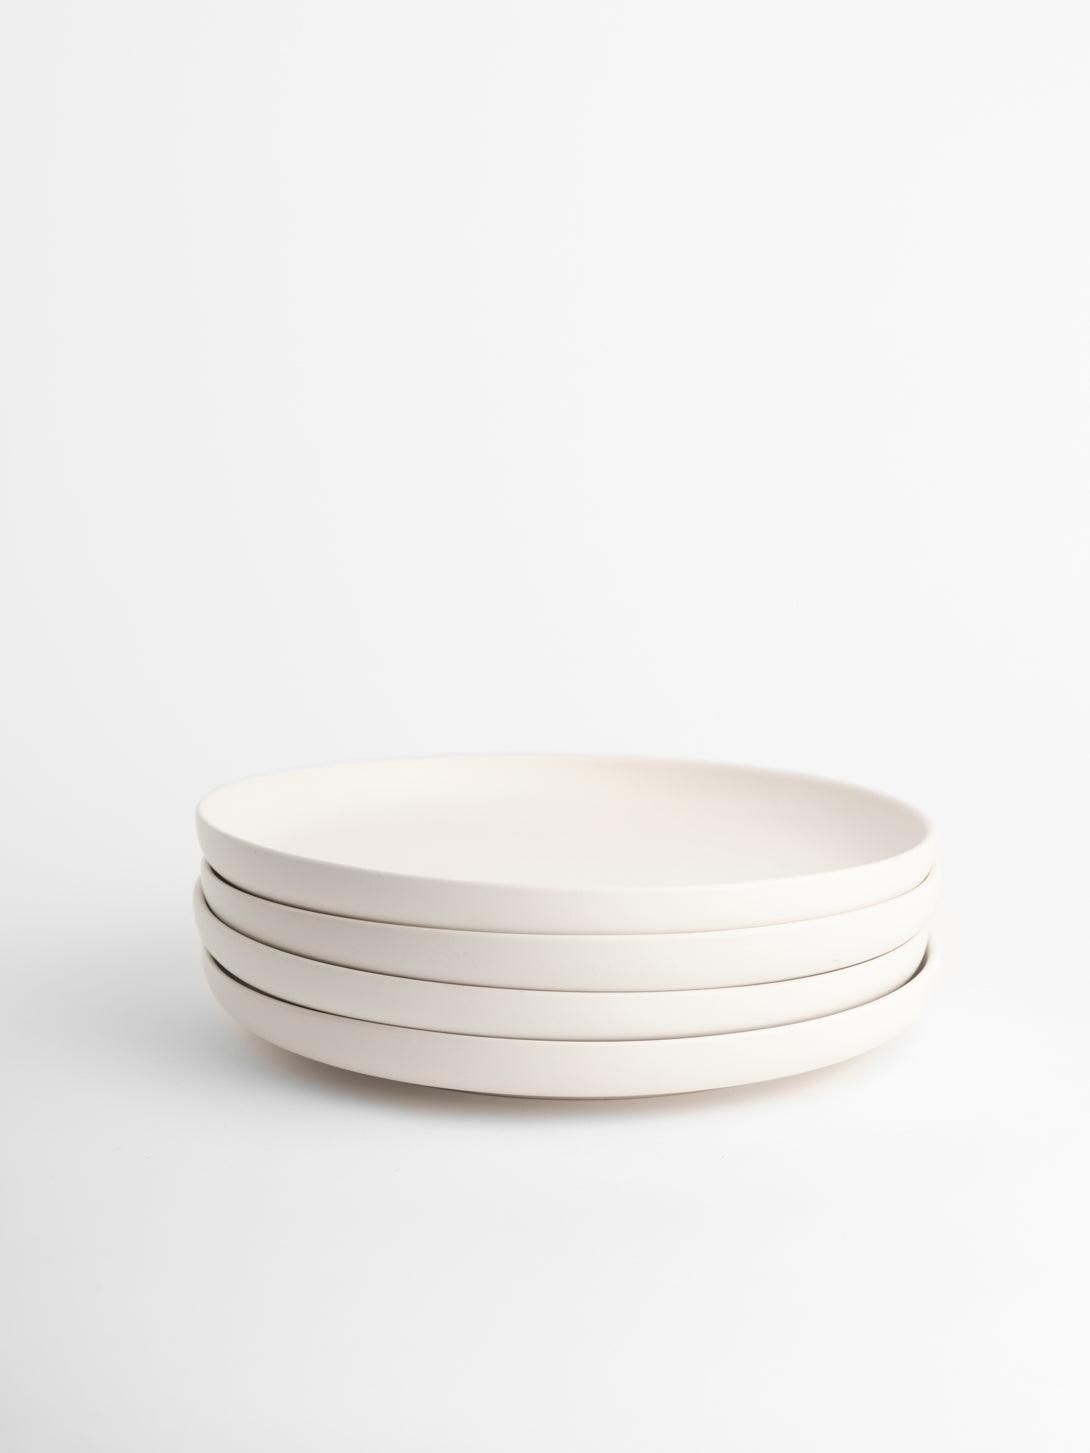 LivingTaste | Matt Ceramic White Tableware | Dinner Dish | Dinner Plates